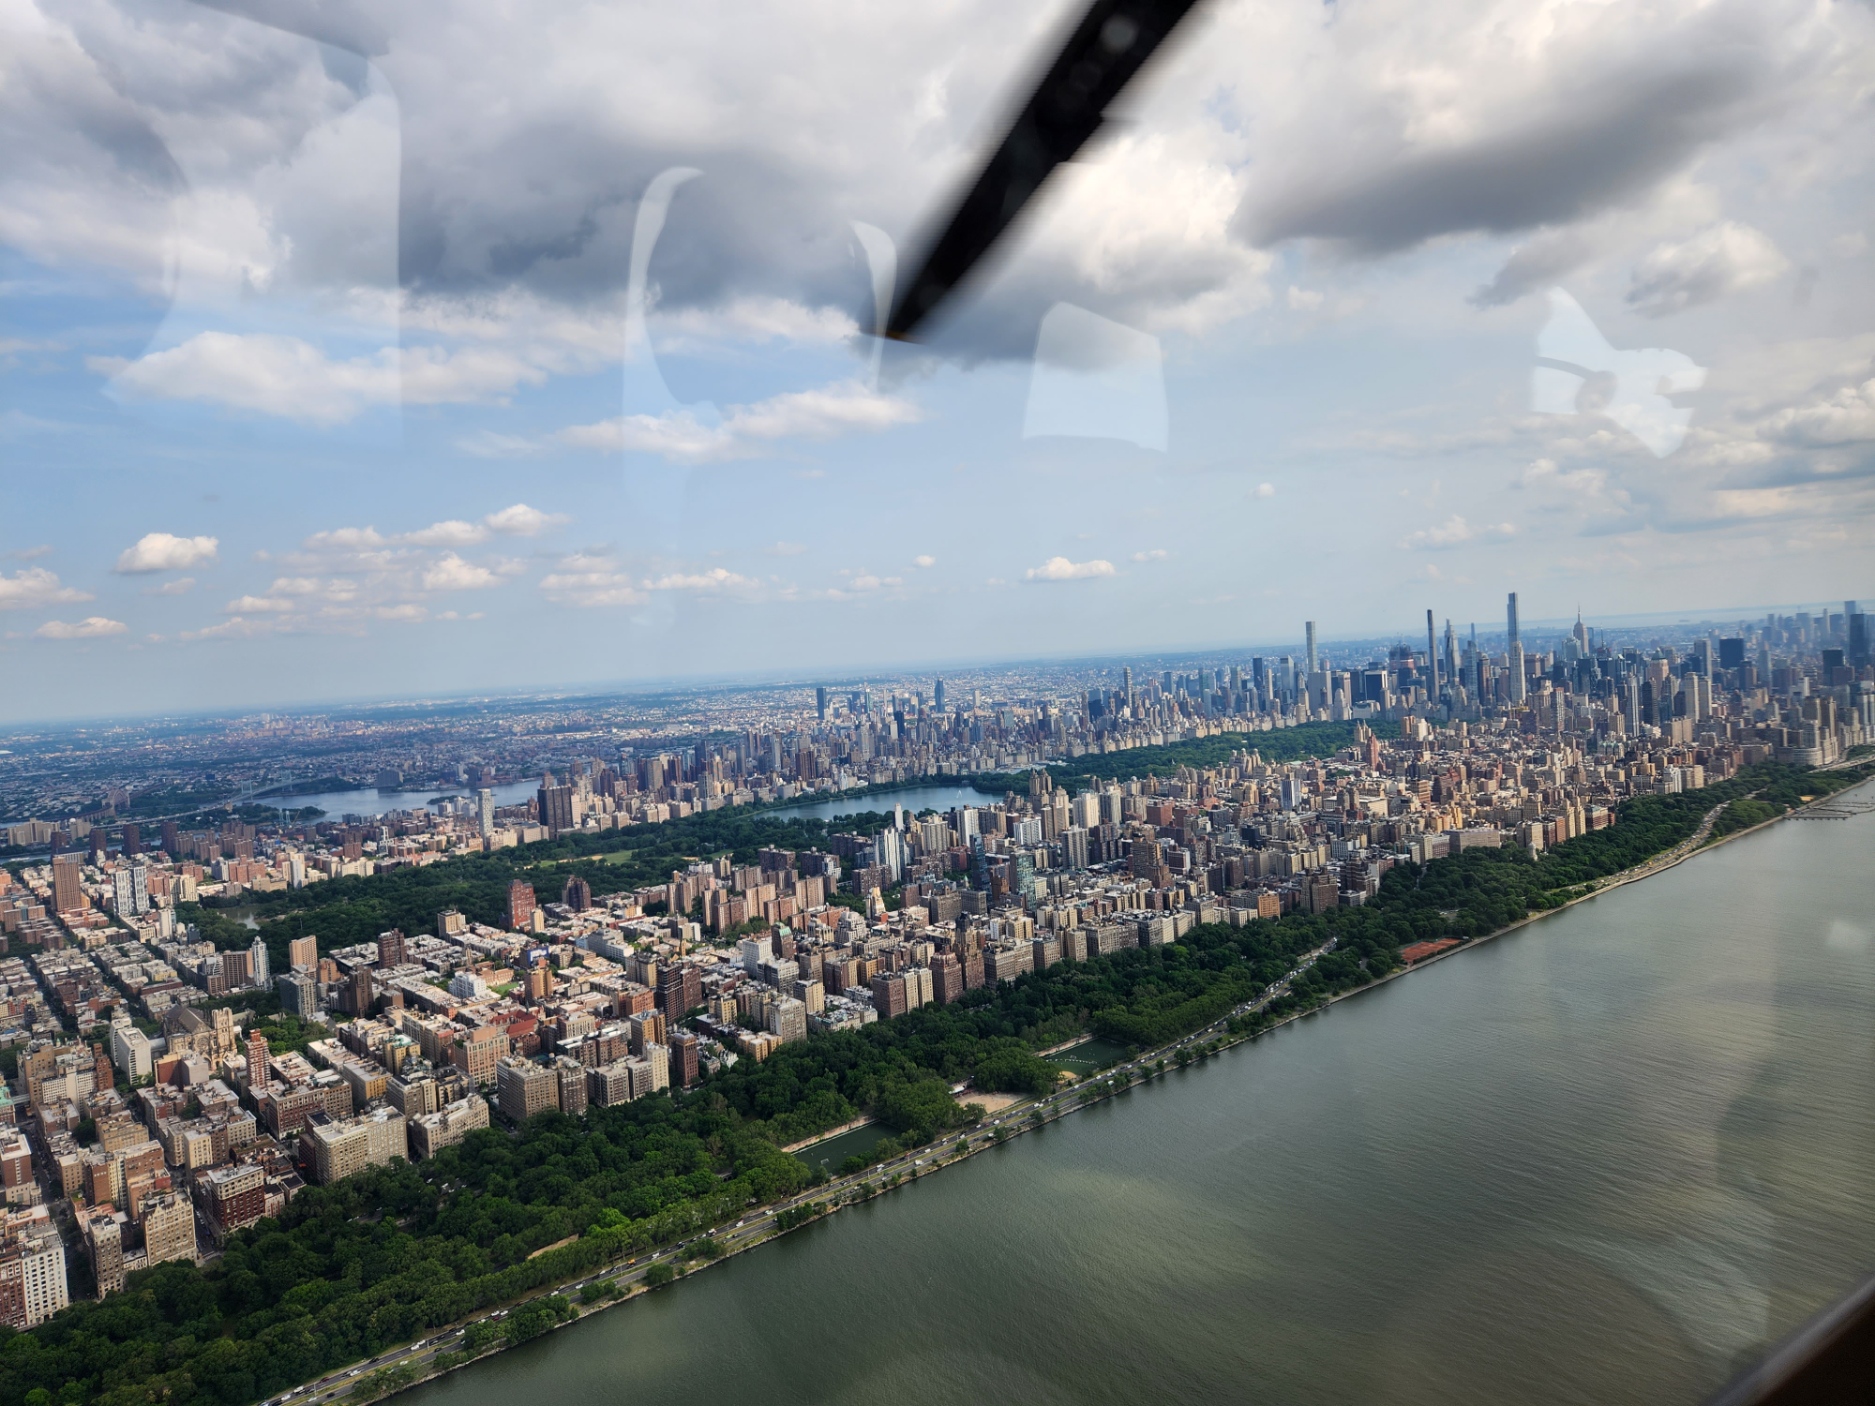 Der Blick auf den Central Park aus dem Helikopter.